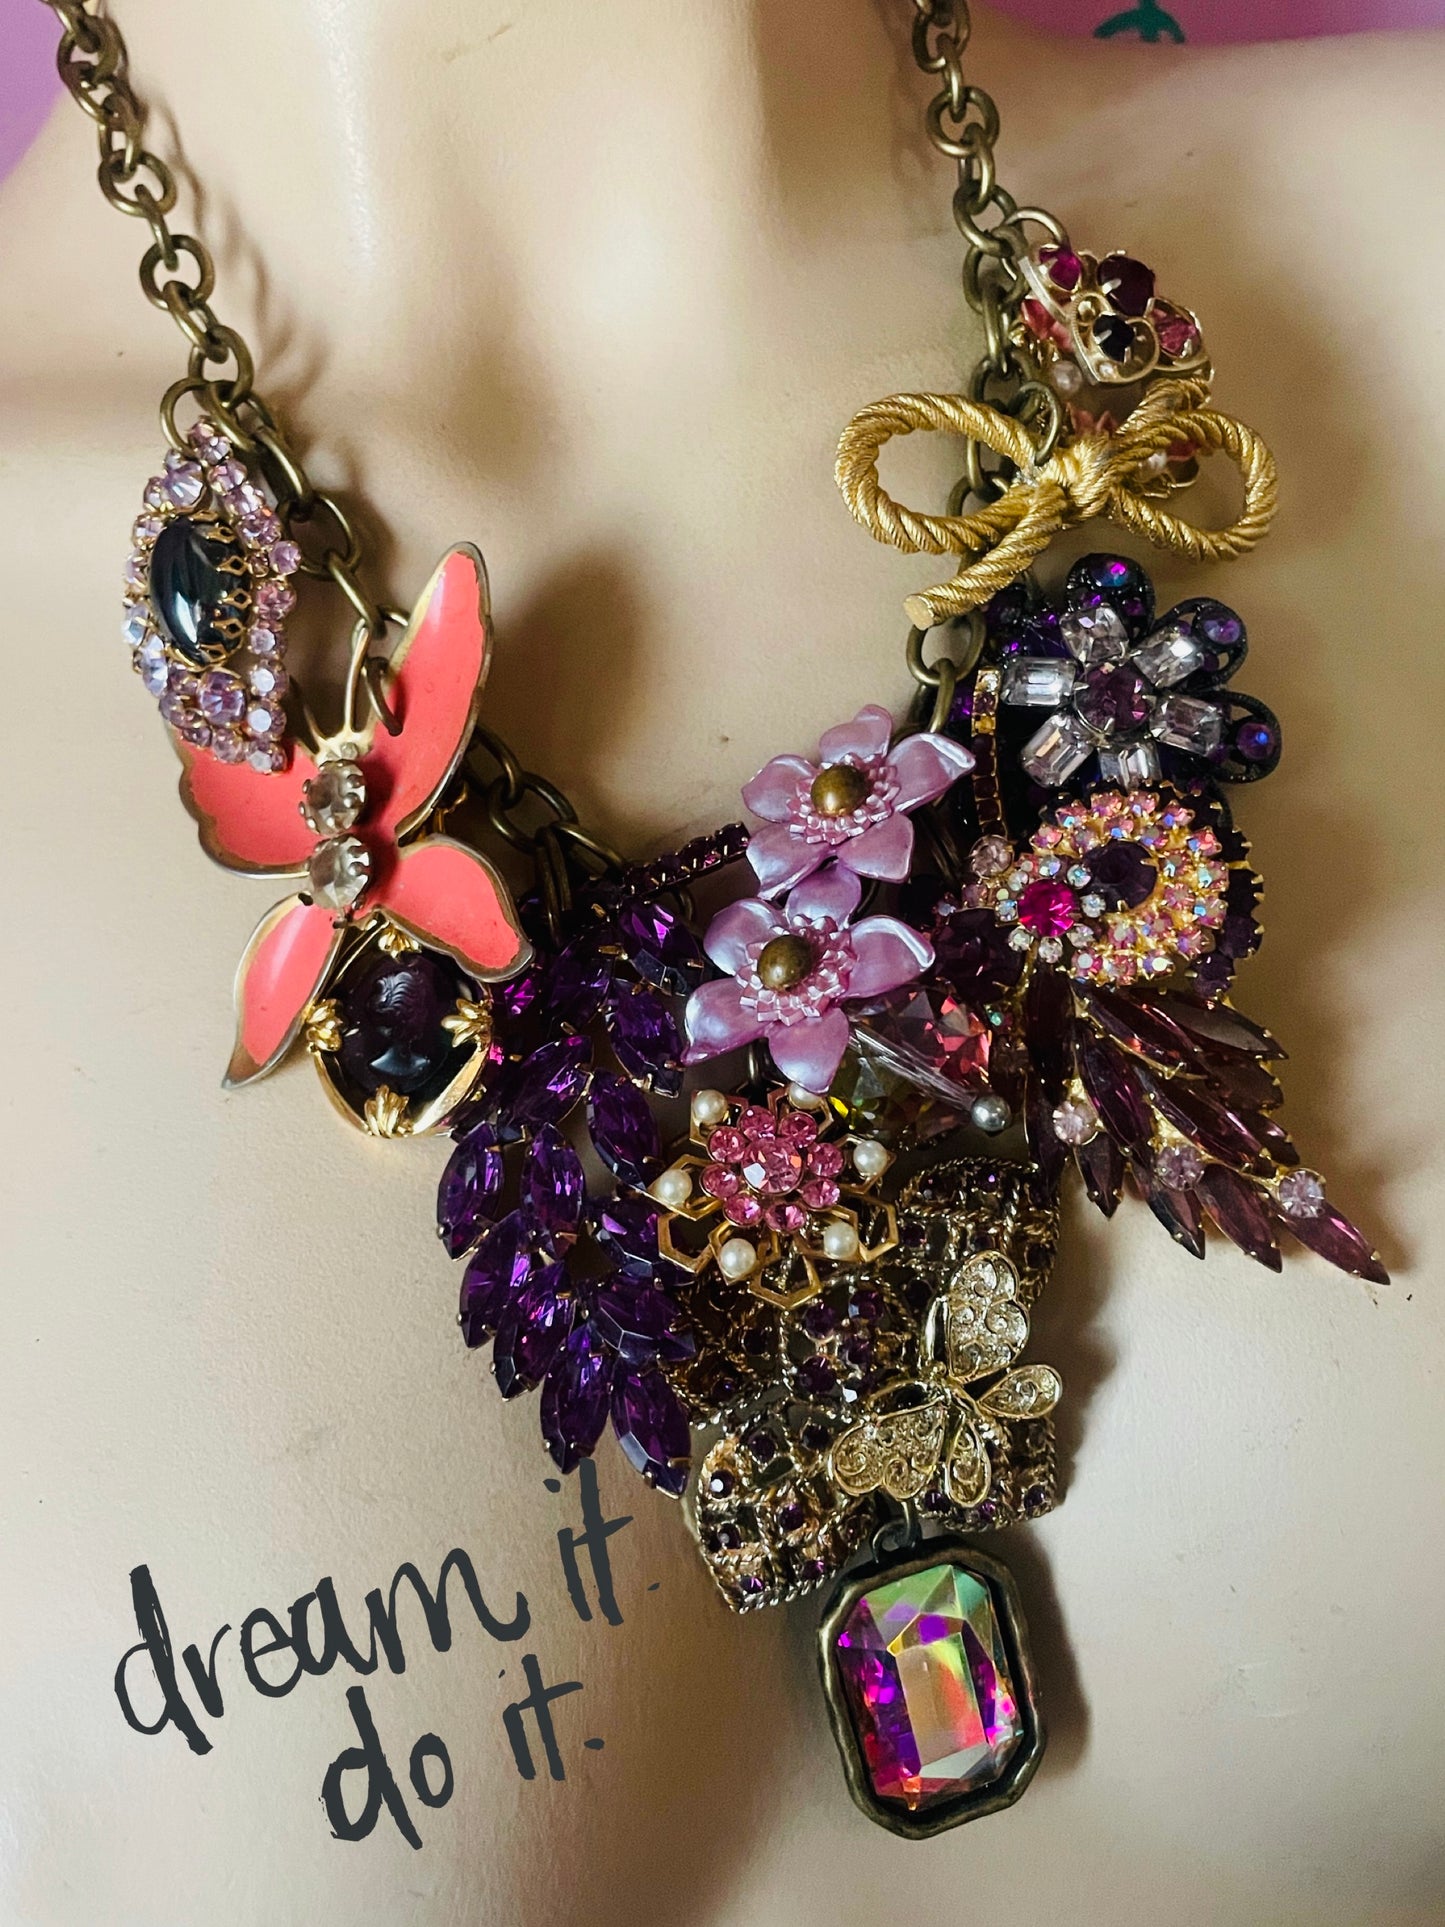 The Color Purple vintage necklace